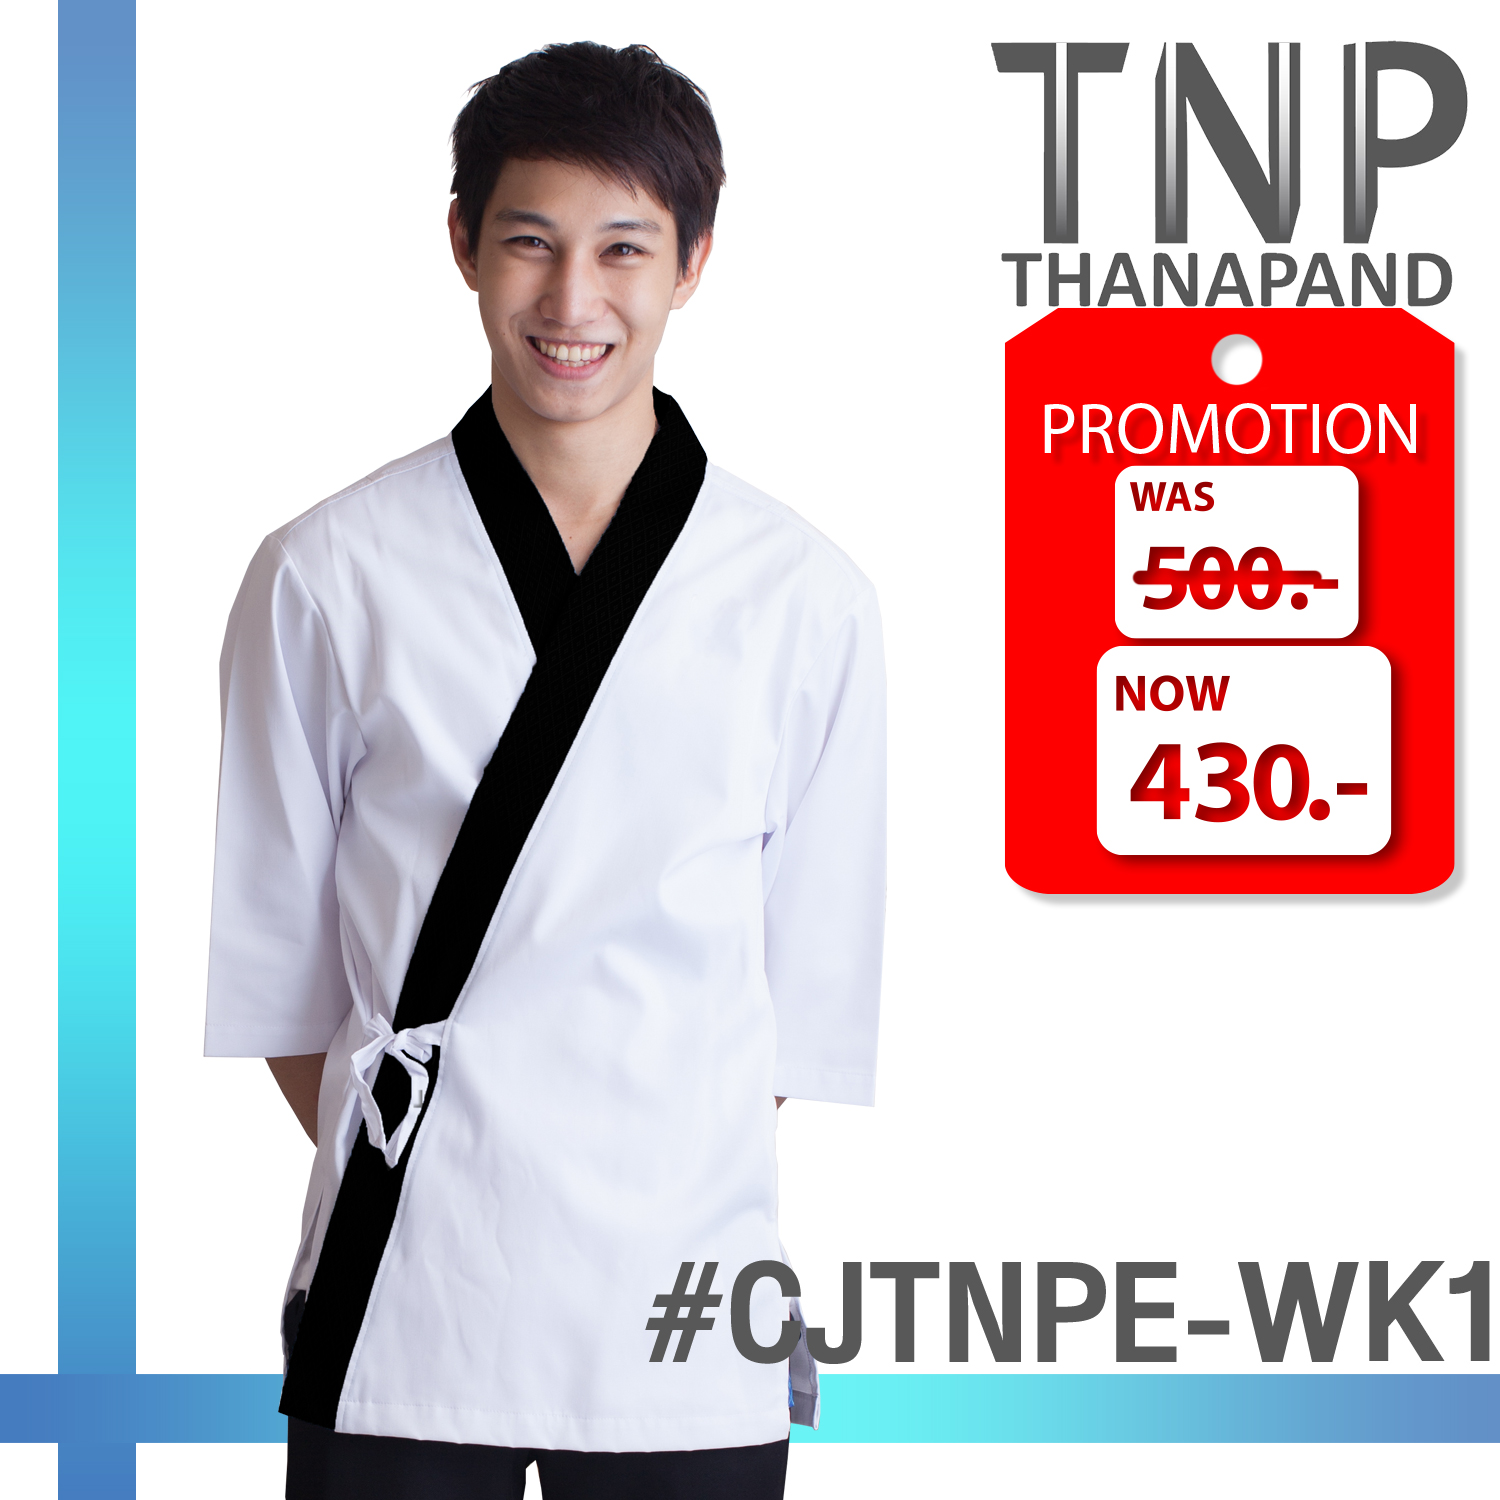 เสื้อเชฟทรงญี่ปุ่น แขนสามส่วน คอป้าย รหัส: CJTNPE (TNP-Thanapand ฐานะภัณฑ์)